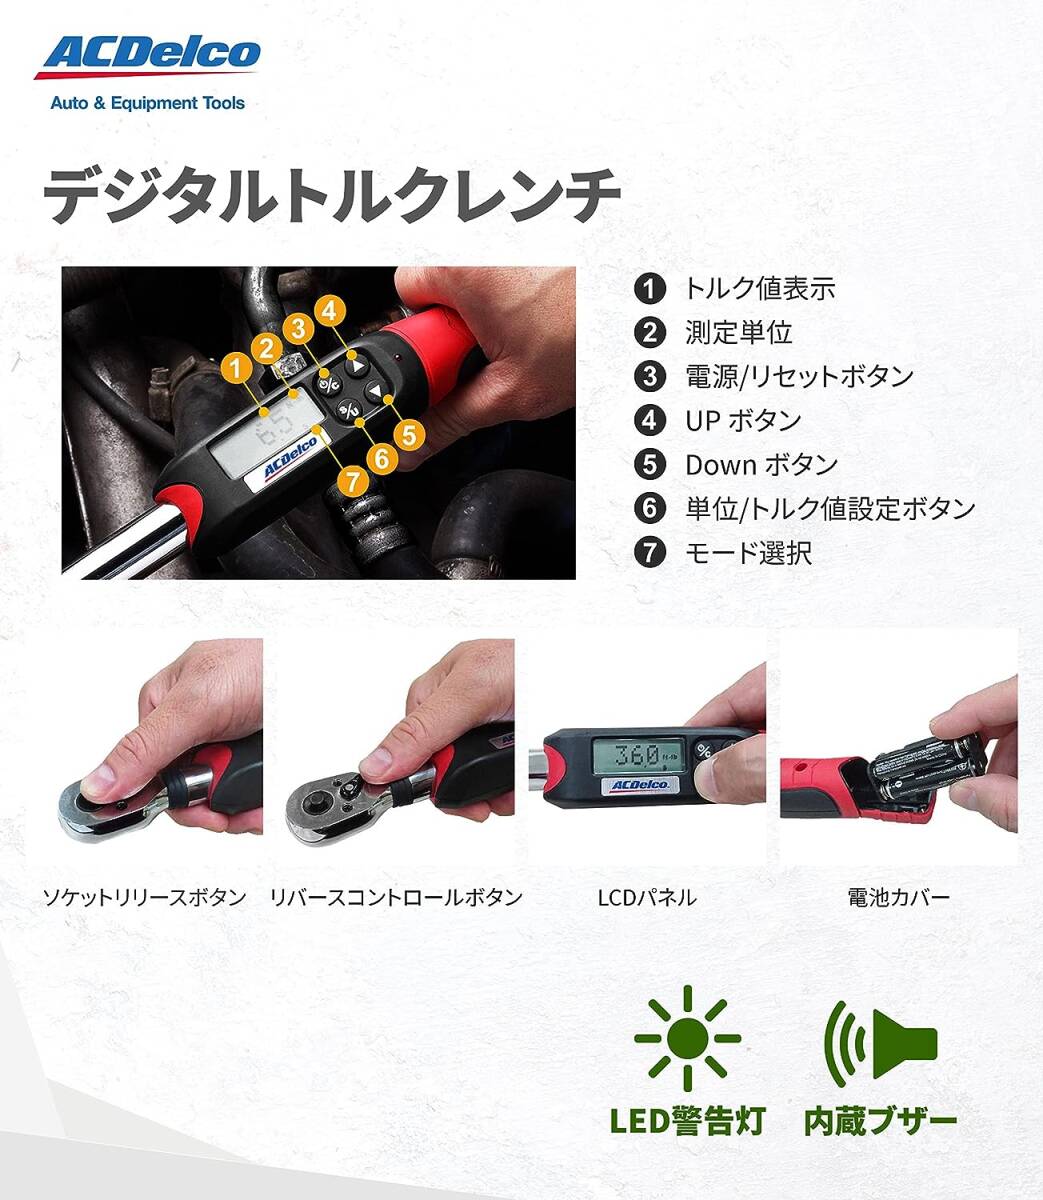 【新品】ACDelco 3/8” (9.5mm) デジタルトルクレンチ ARM601-3 トルク値5-50Nm ブザー&LED警告灯内蔵 自動車修理 ACデルコ 日本語取説付きの画像2